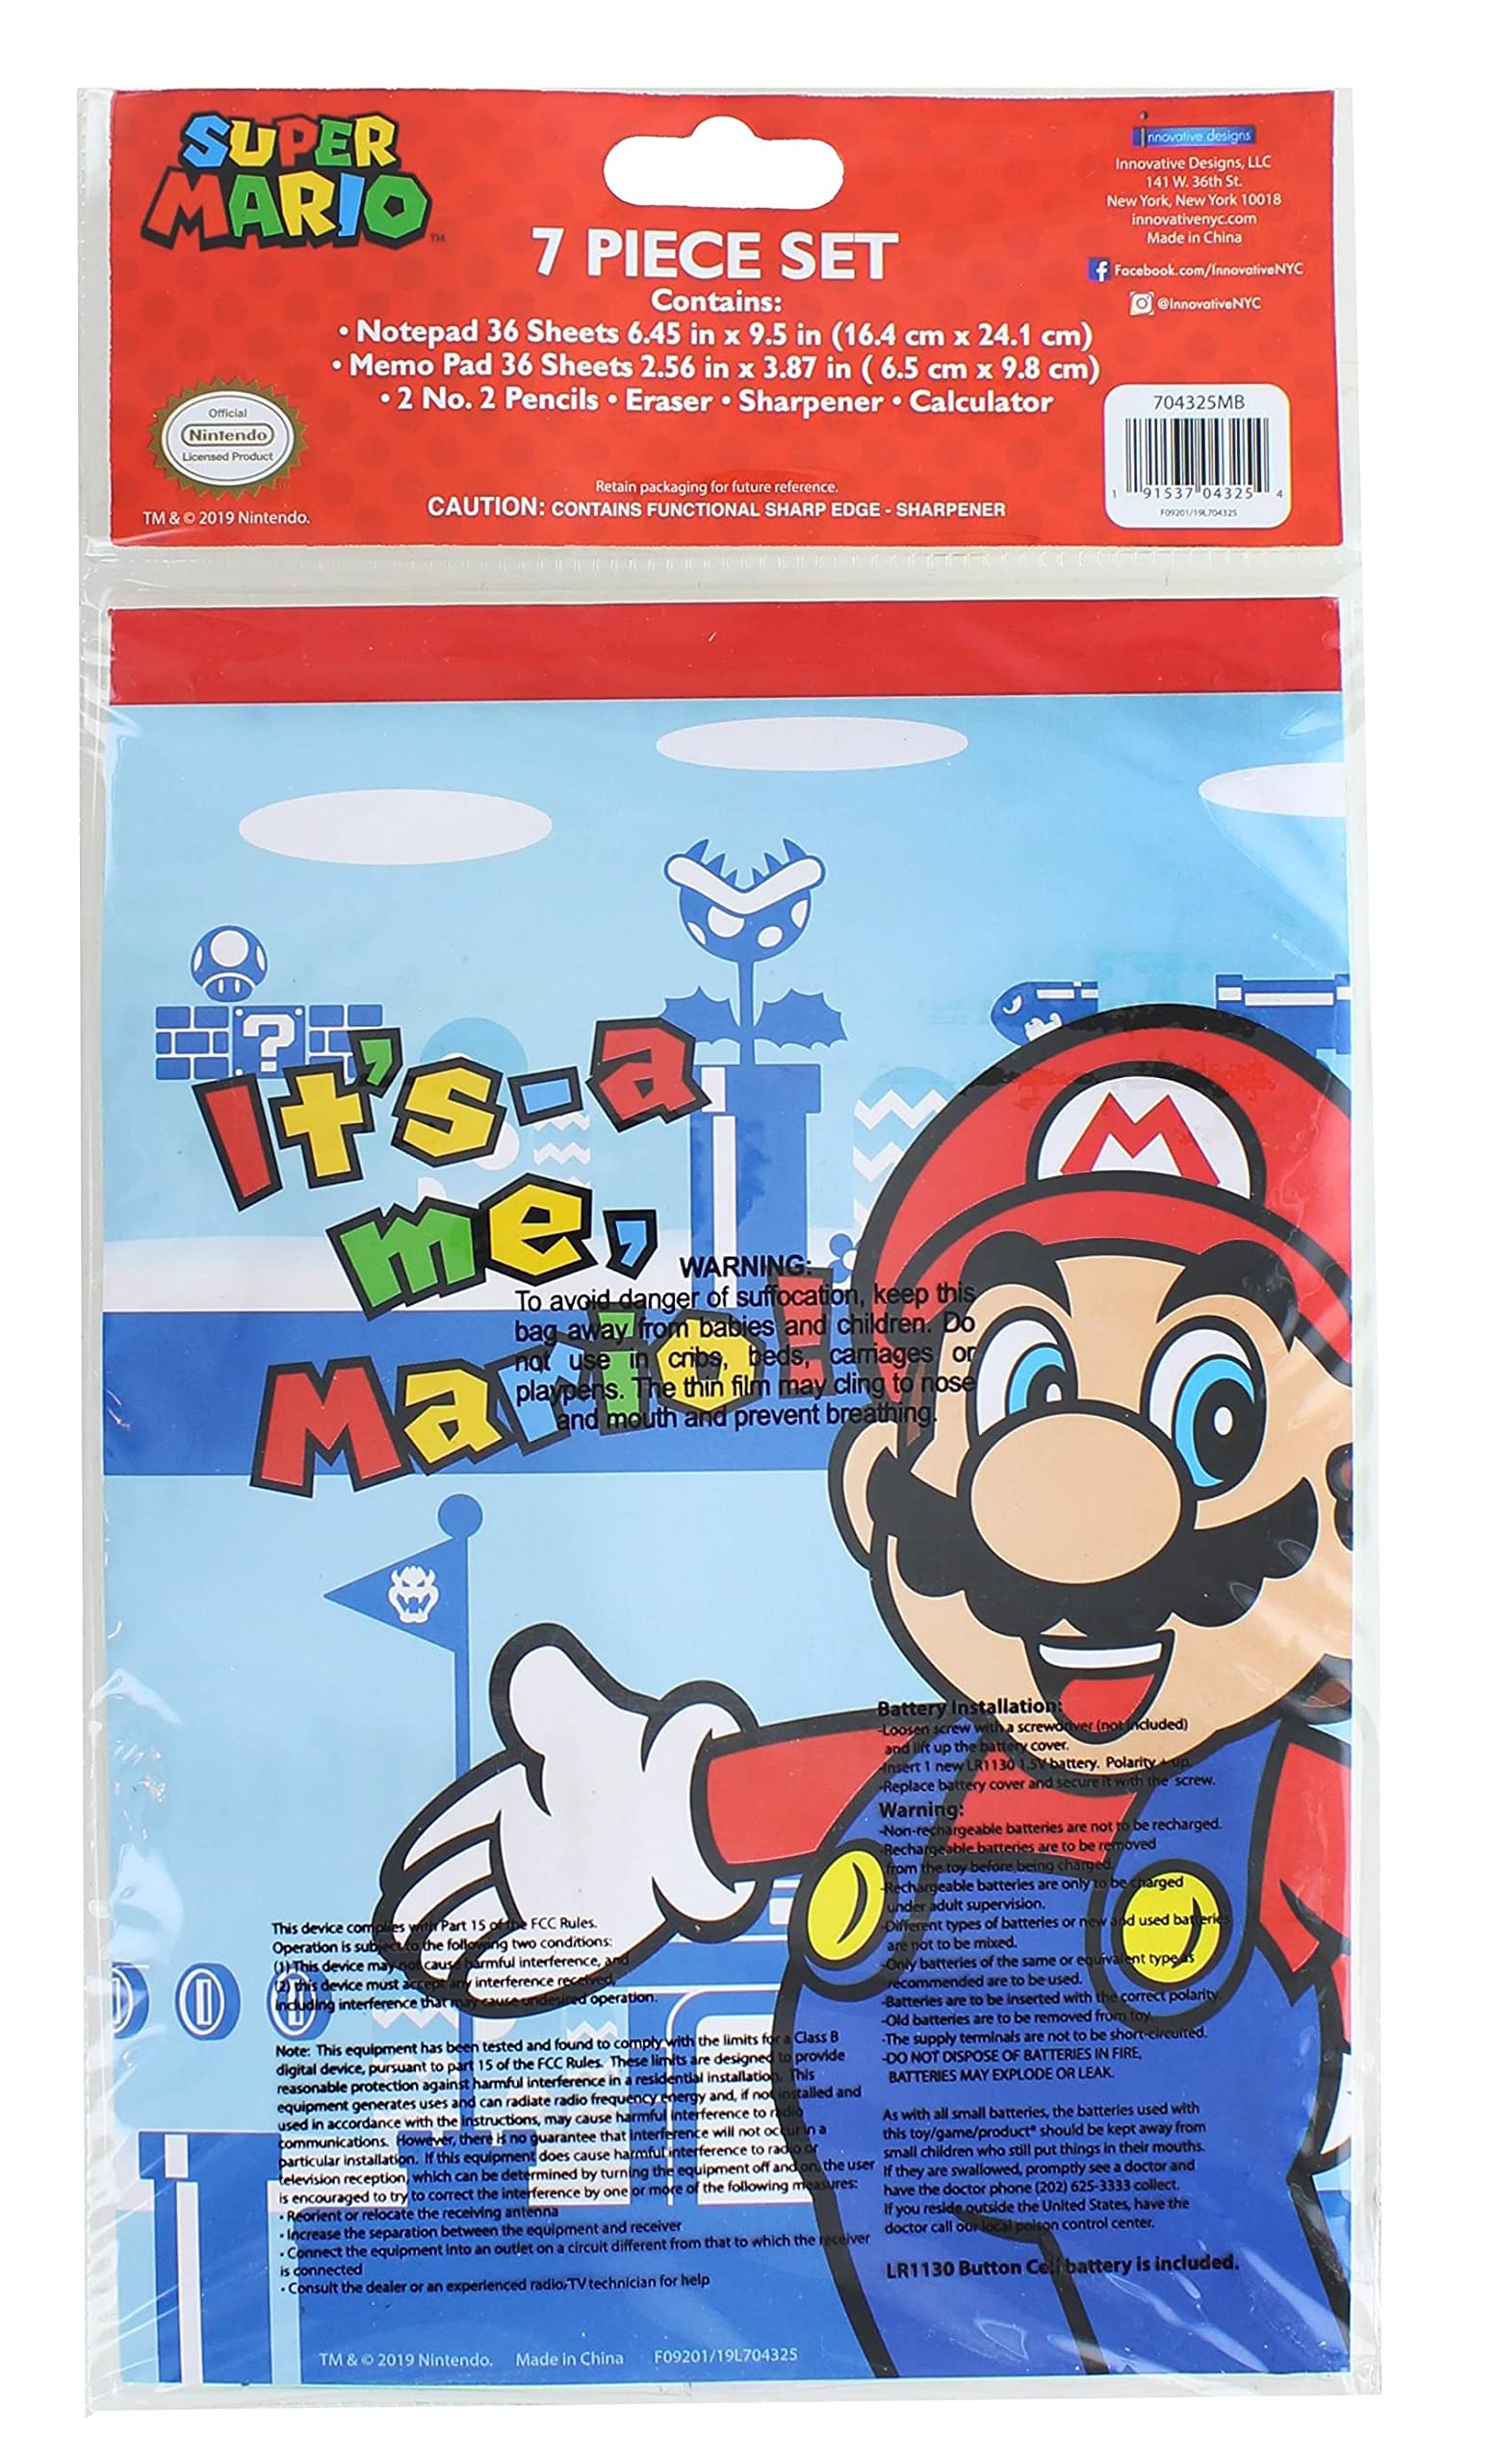 Mario Bros. Calculator School Supplies Set - 7 Piece Bundle for Back to School